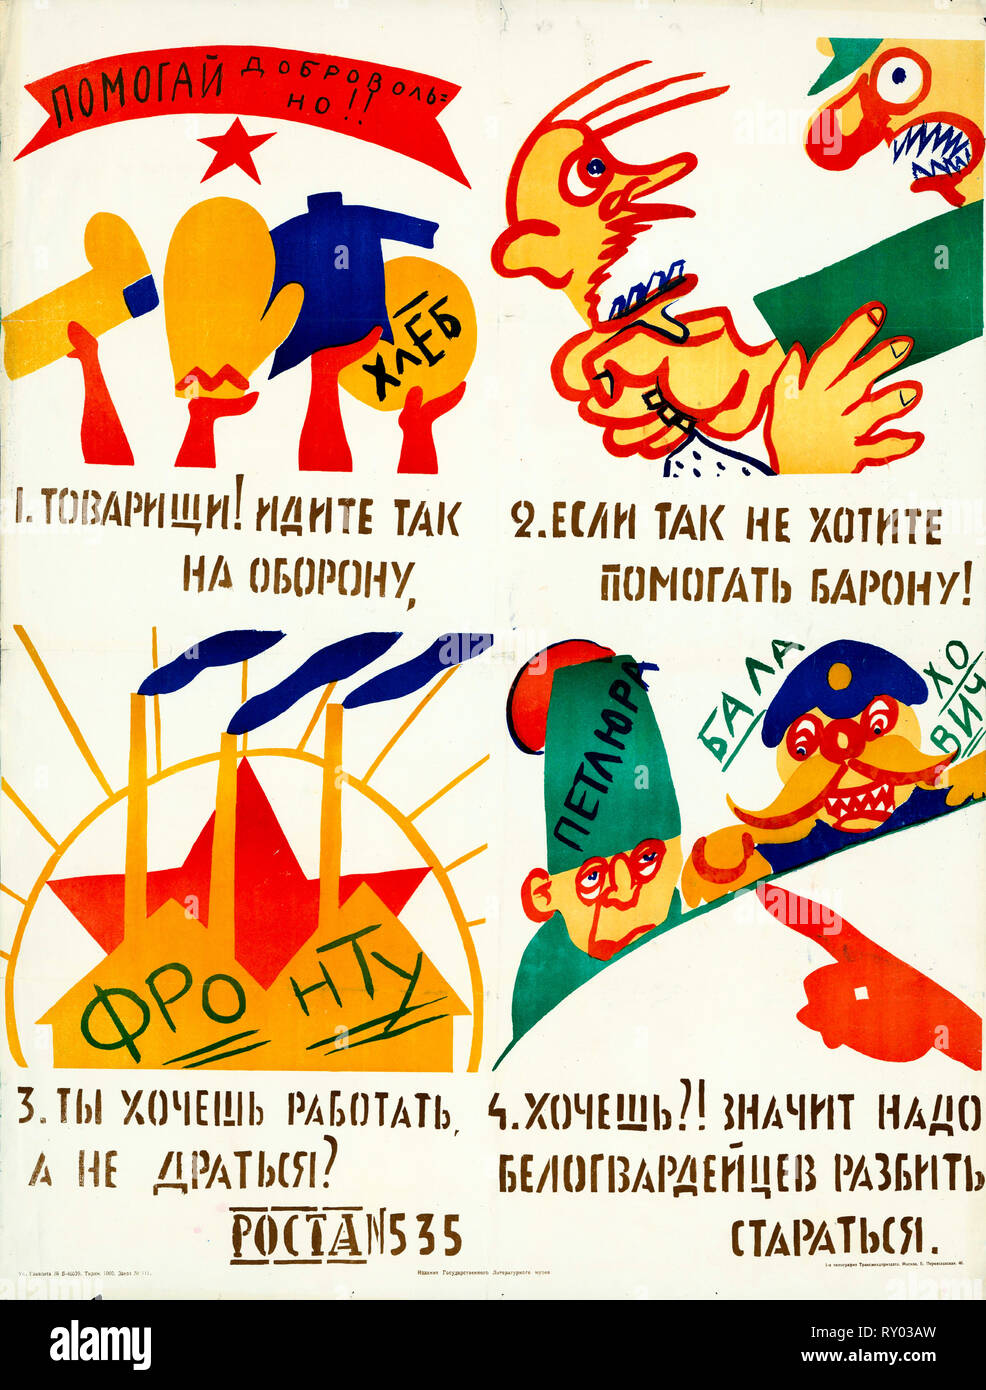 ROSTA, Windows affiche de propagande soviétique au pochoir, volontairement aider ! Camarades ! Rendez-vous sur la défense, alors si vous ne voulez pas d'aider le baron !, 1920 Banque D'Images